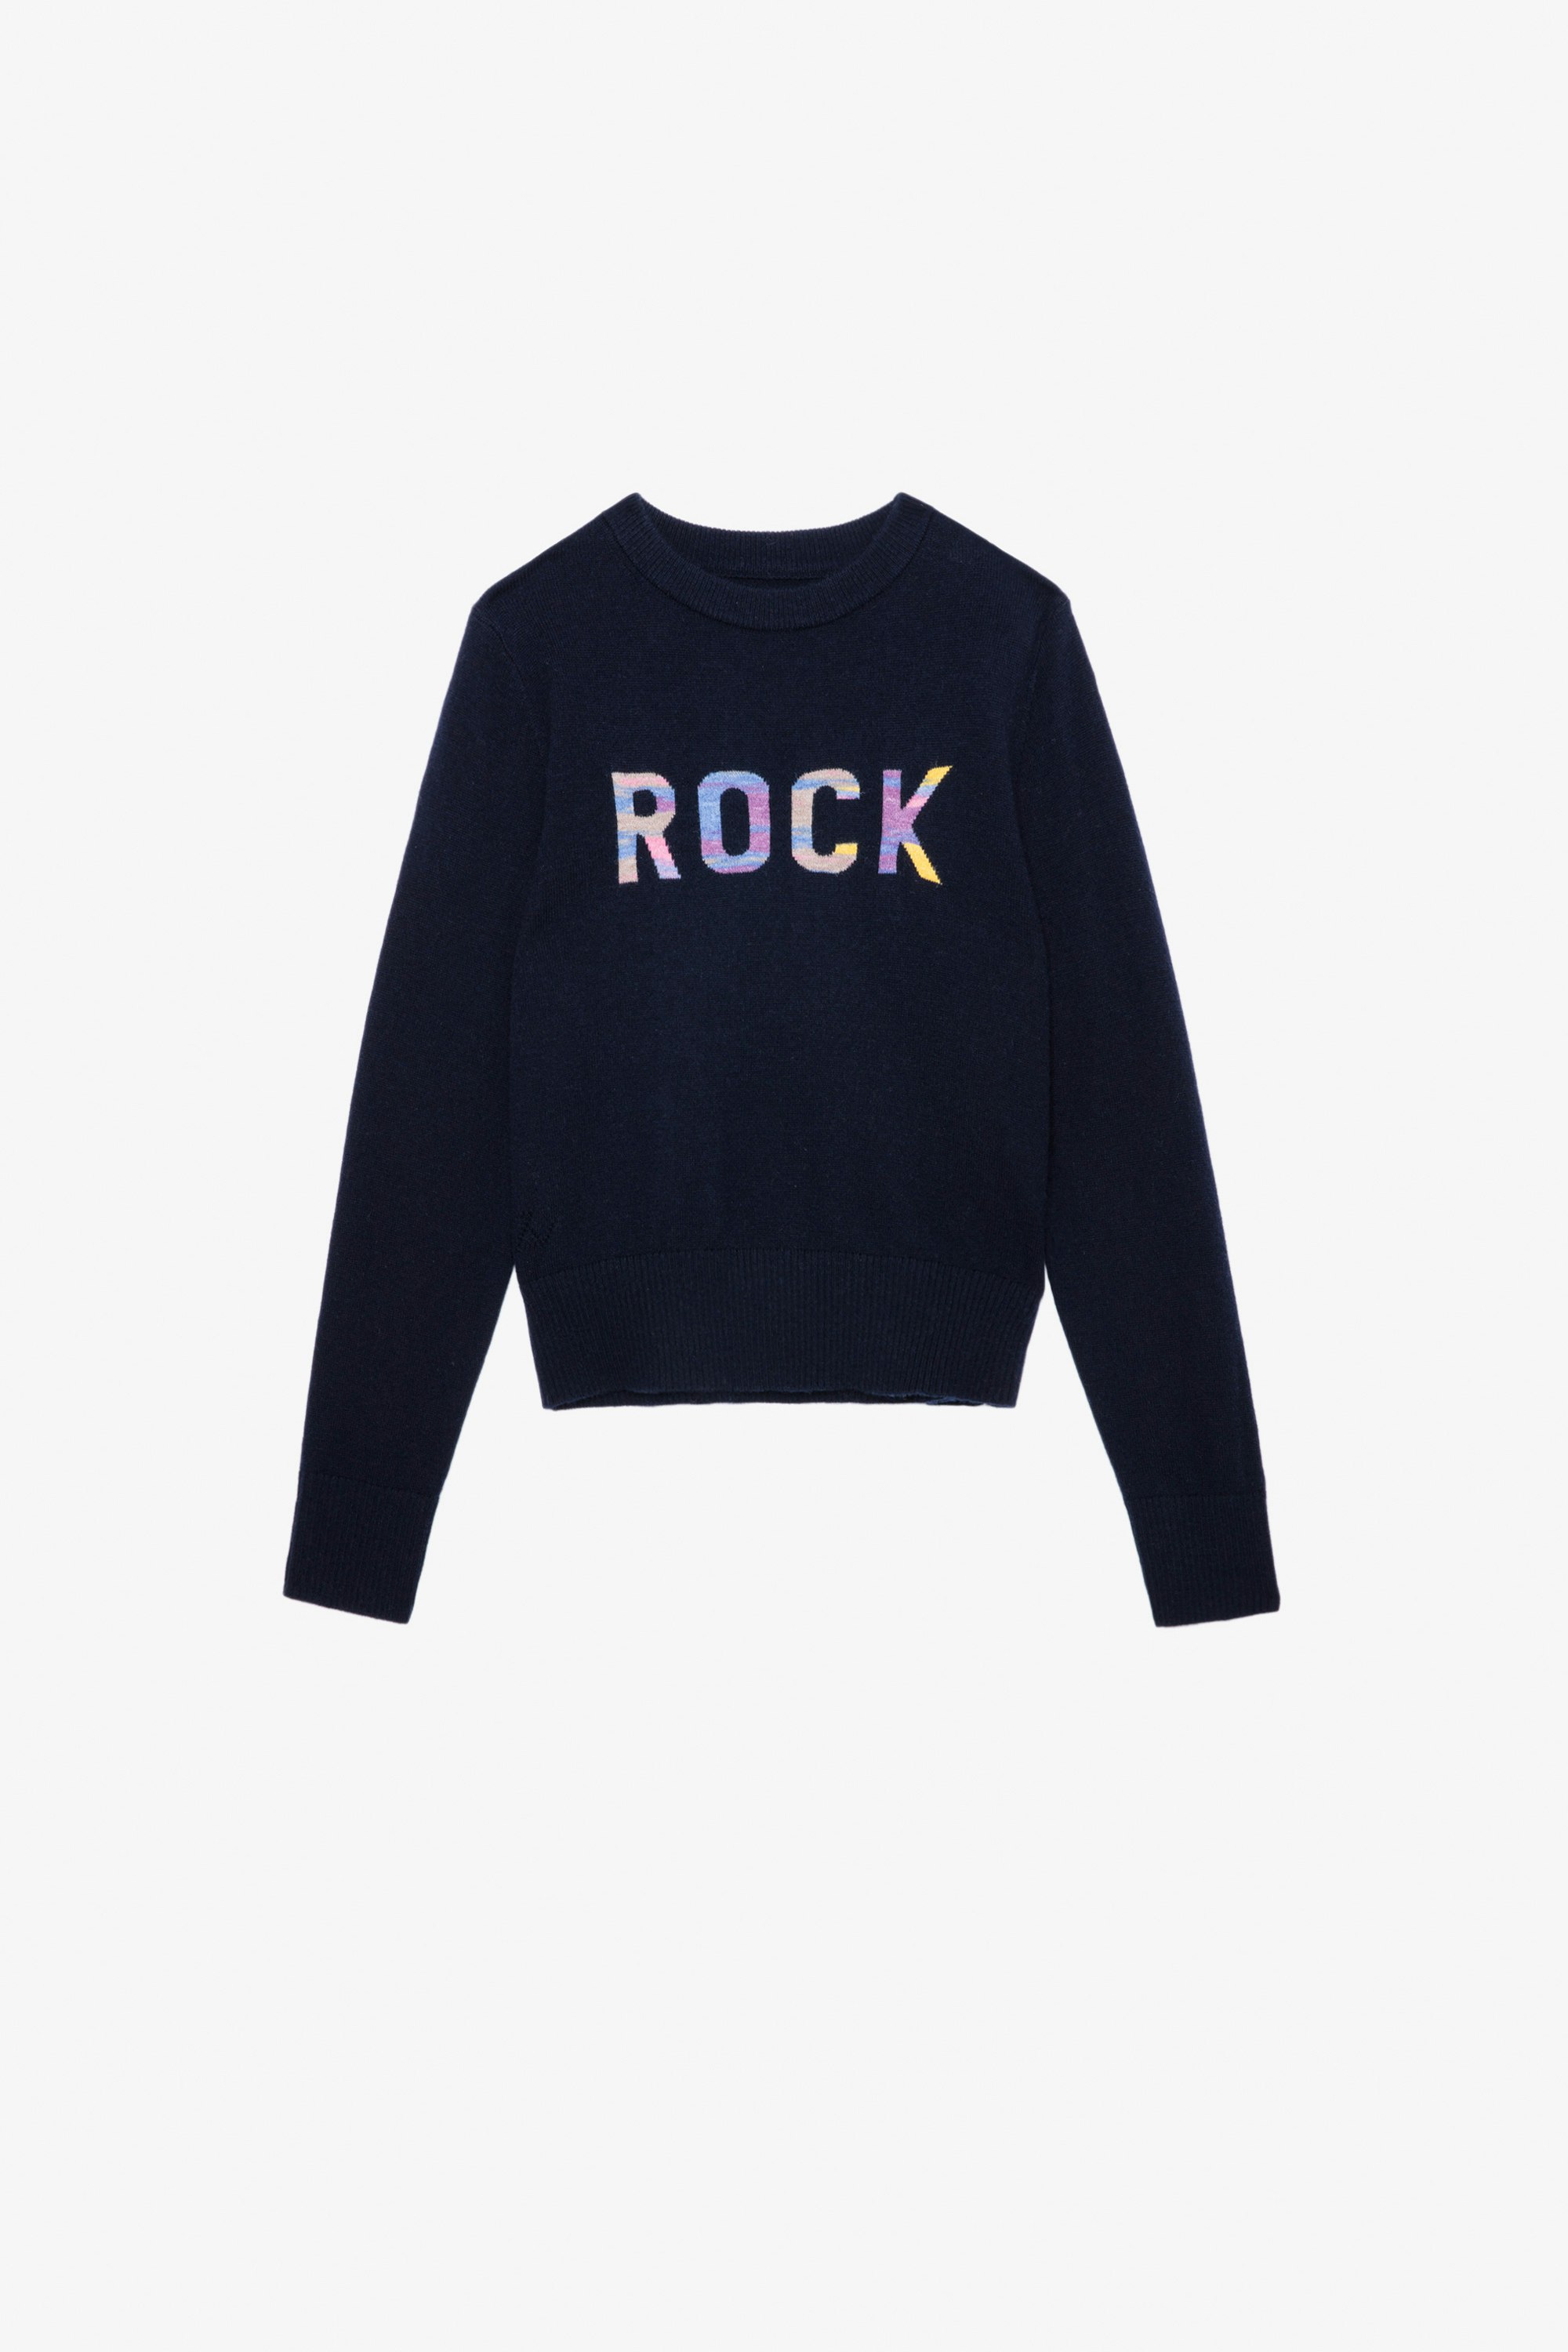 Drum Girls’ Jumper - Girls’ navy blue knit sweater with “Rock” slogan.